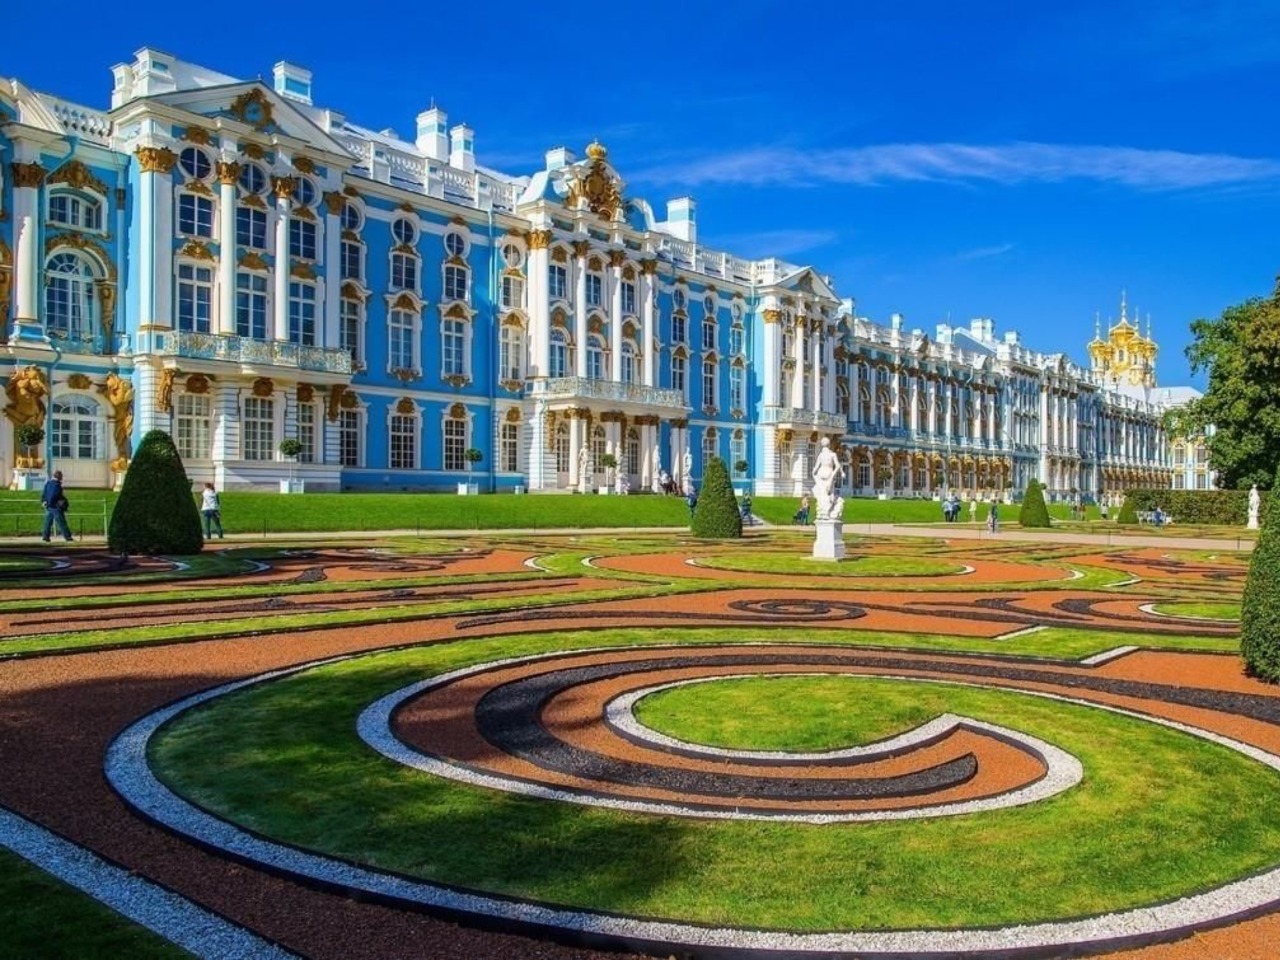 Сити-тур по Санкт-Петербургу с посещением Пушкина | Цена 17000₽, отзывы, описание экскурсии